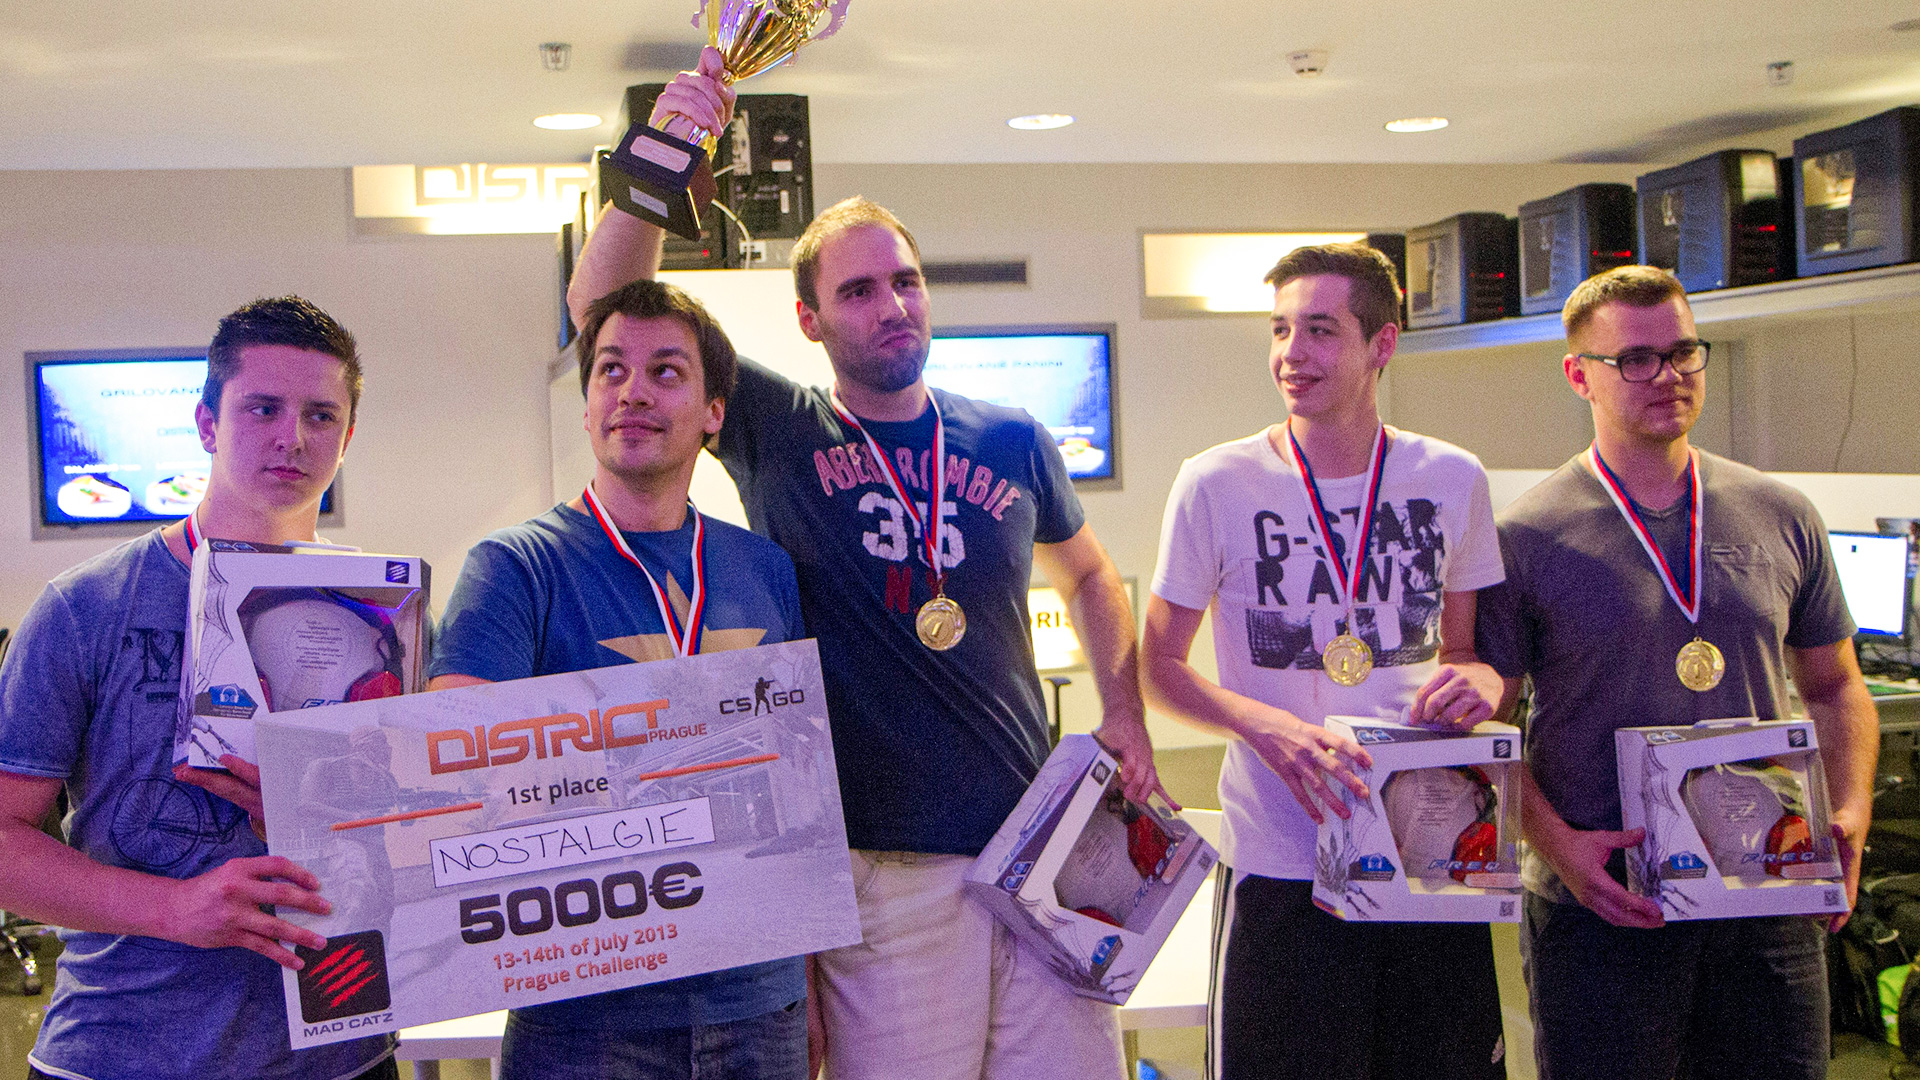 Победа OverDrive в составе Nostalgie на Prague Challenge 2012